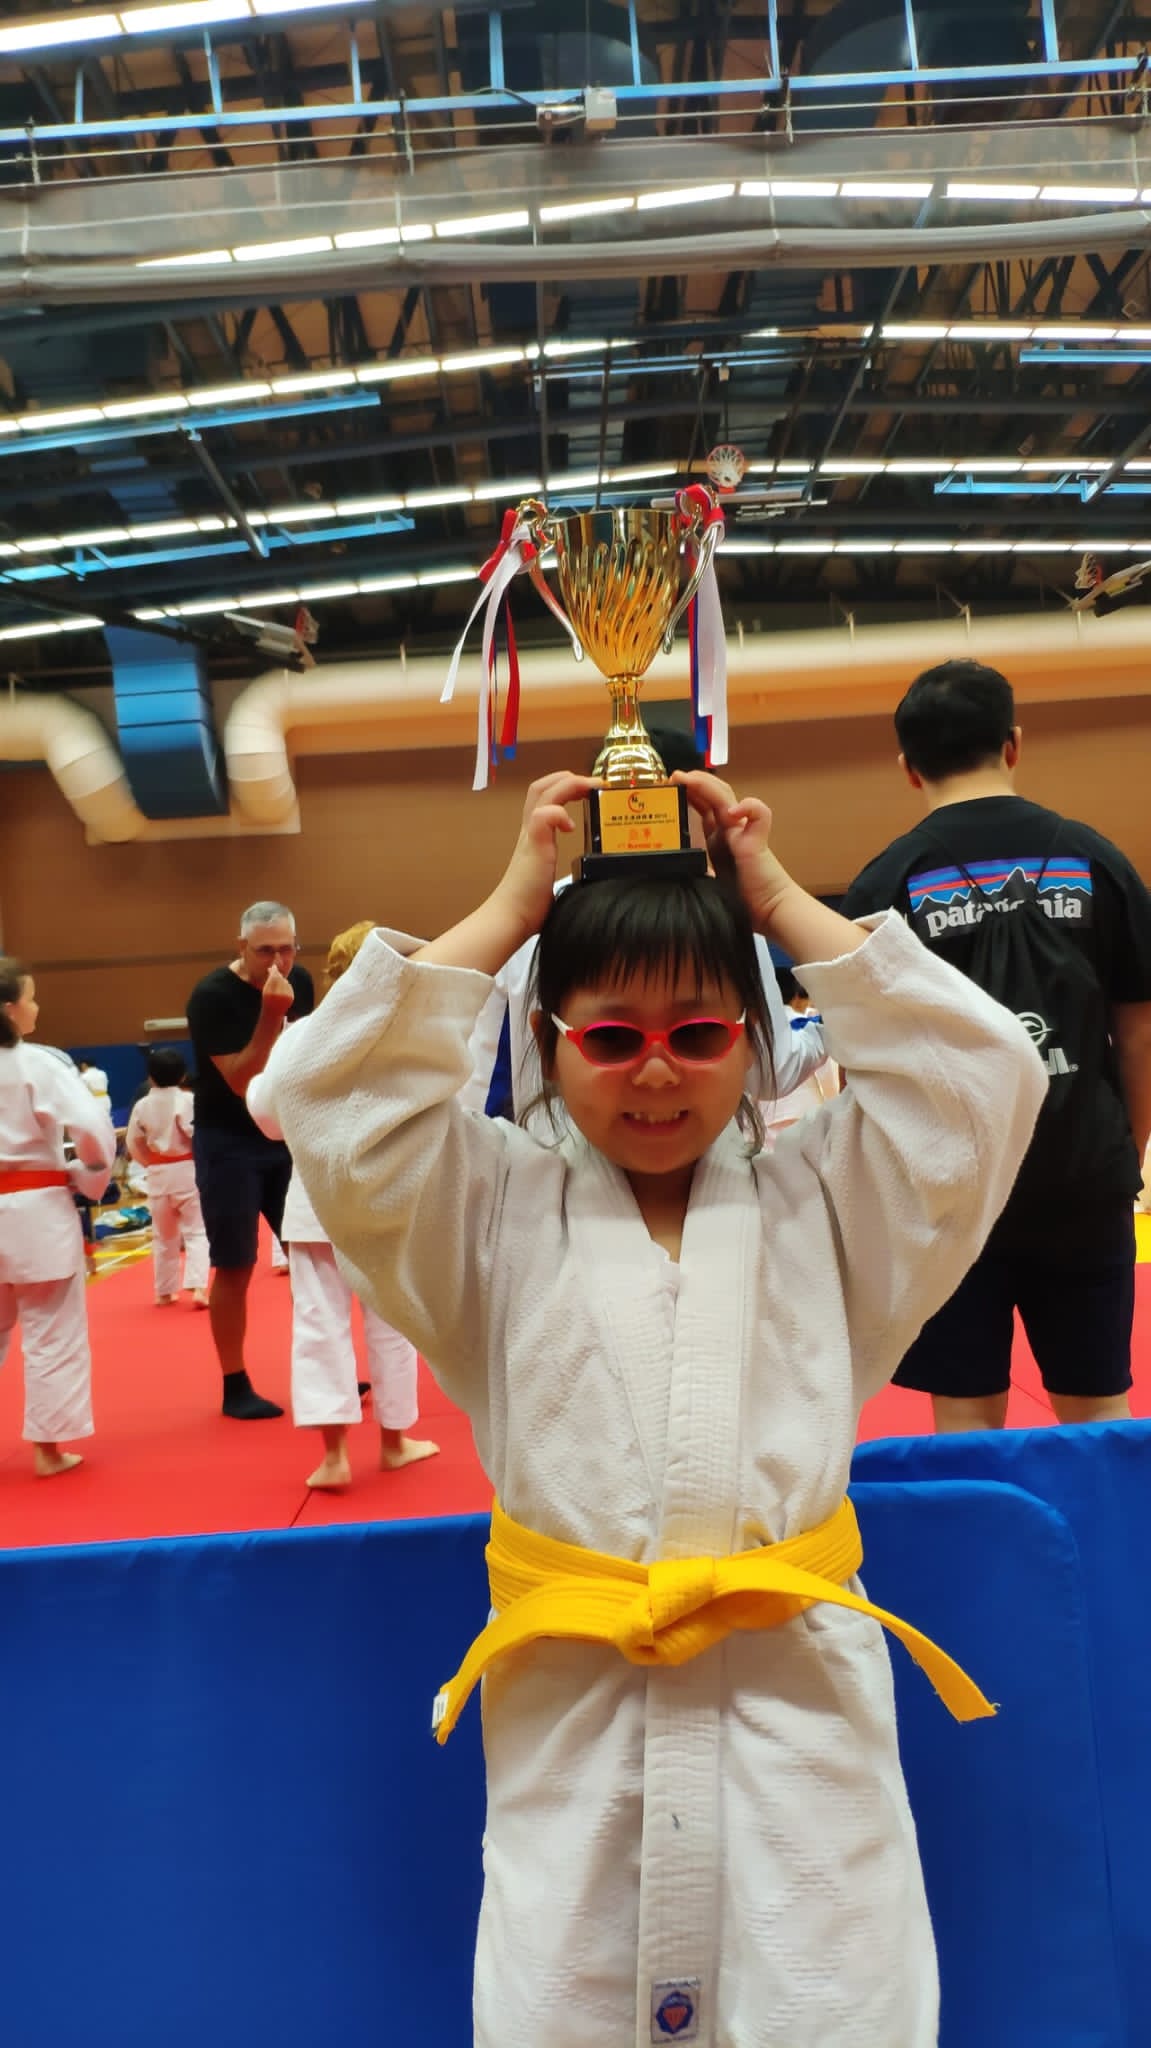 Anna won an award for Judo